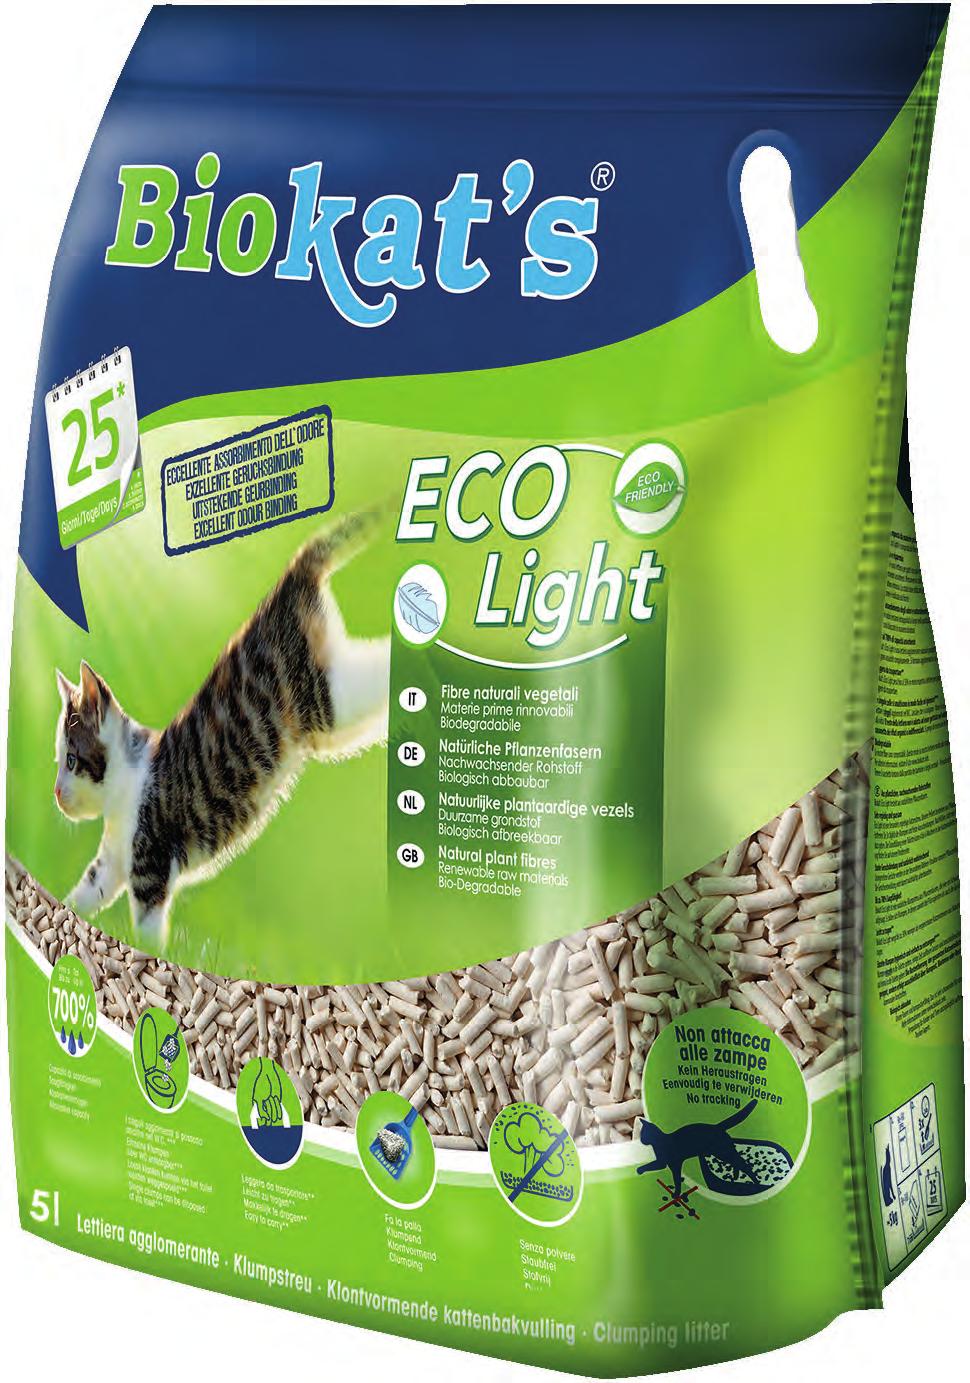 LETTIERA VEGETALE NATURALE Natural vegetal litter Eco Light Fibre naturali 100% facile da smaltire Colore chiaro Biodegradabile Leggera da trasportare Agglomerante Senza polvere Non attacca alle